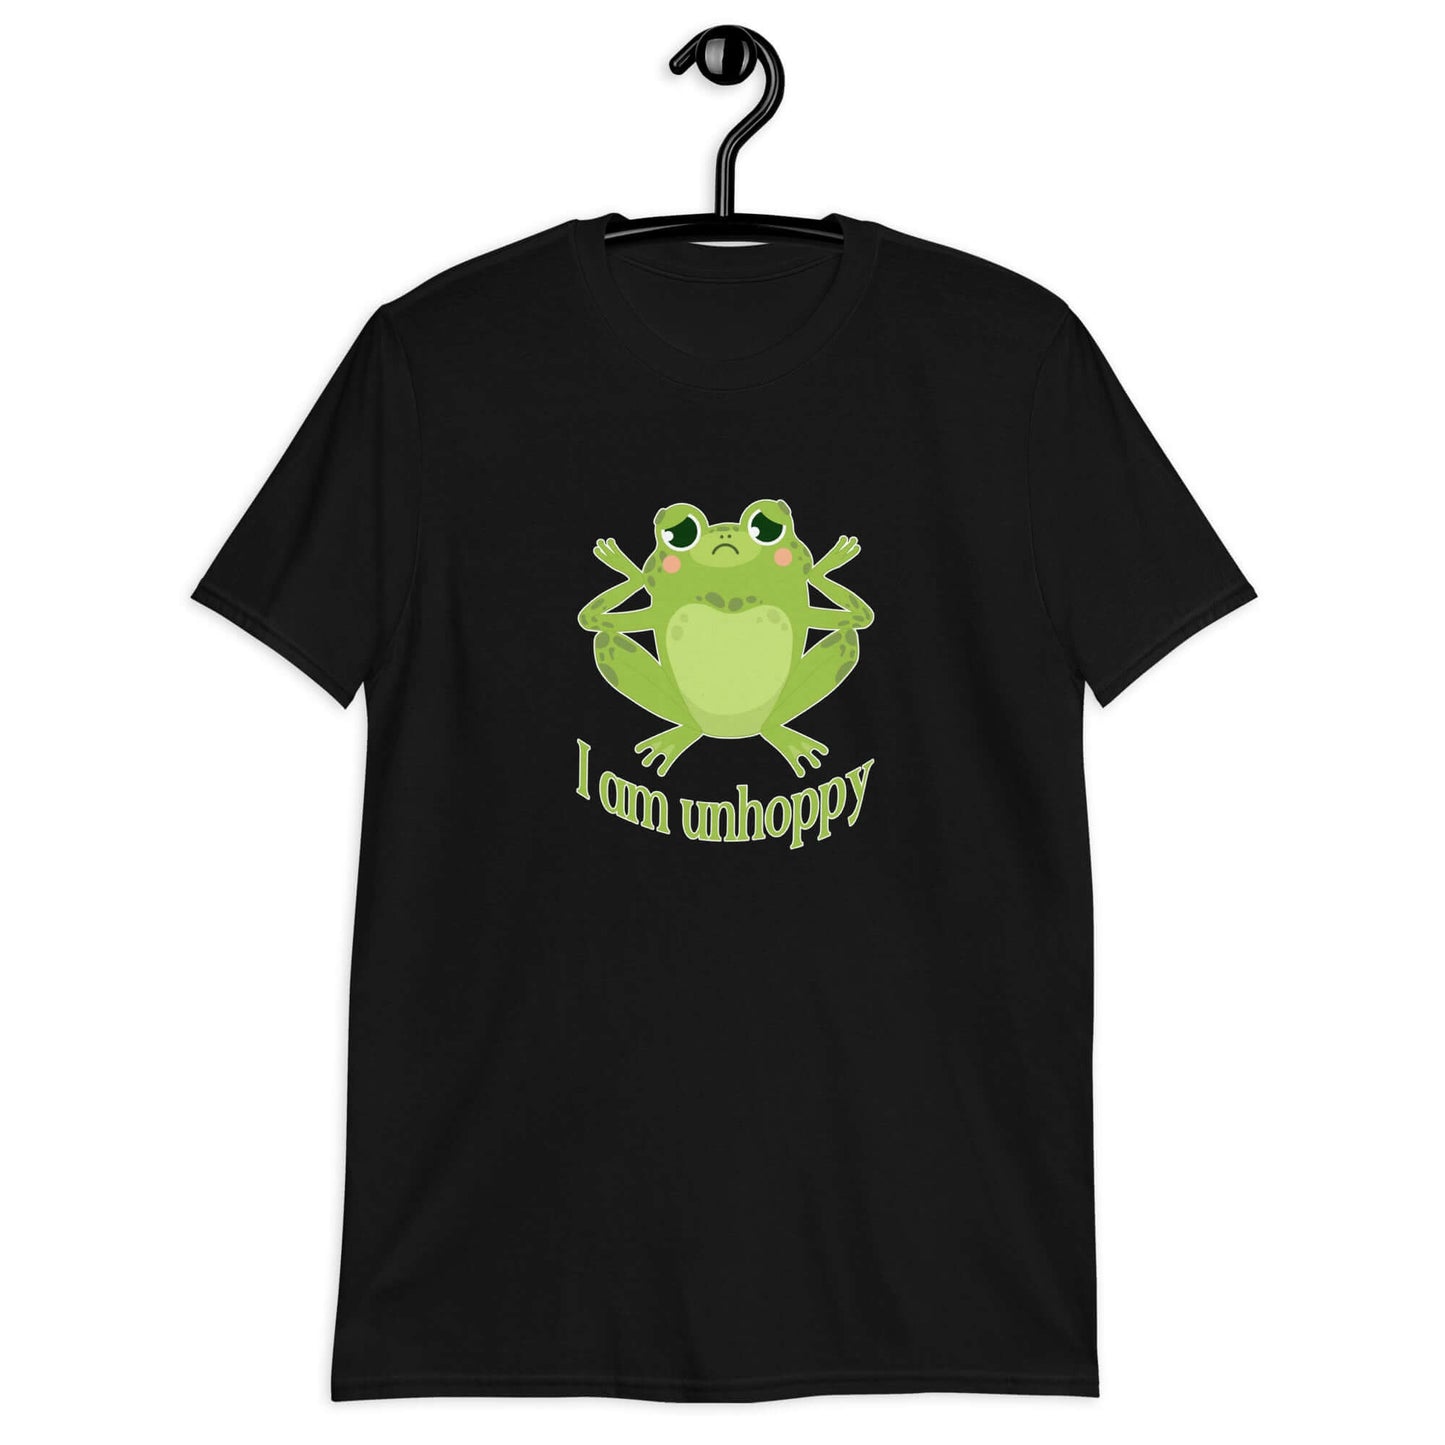 Sad frog unhappy pun T-shirt